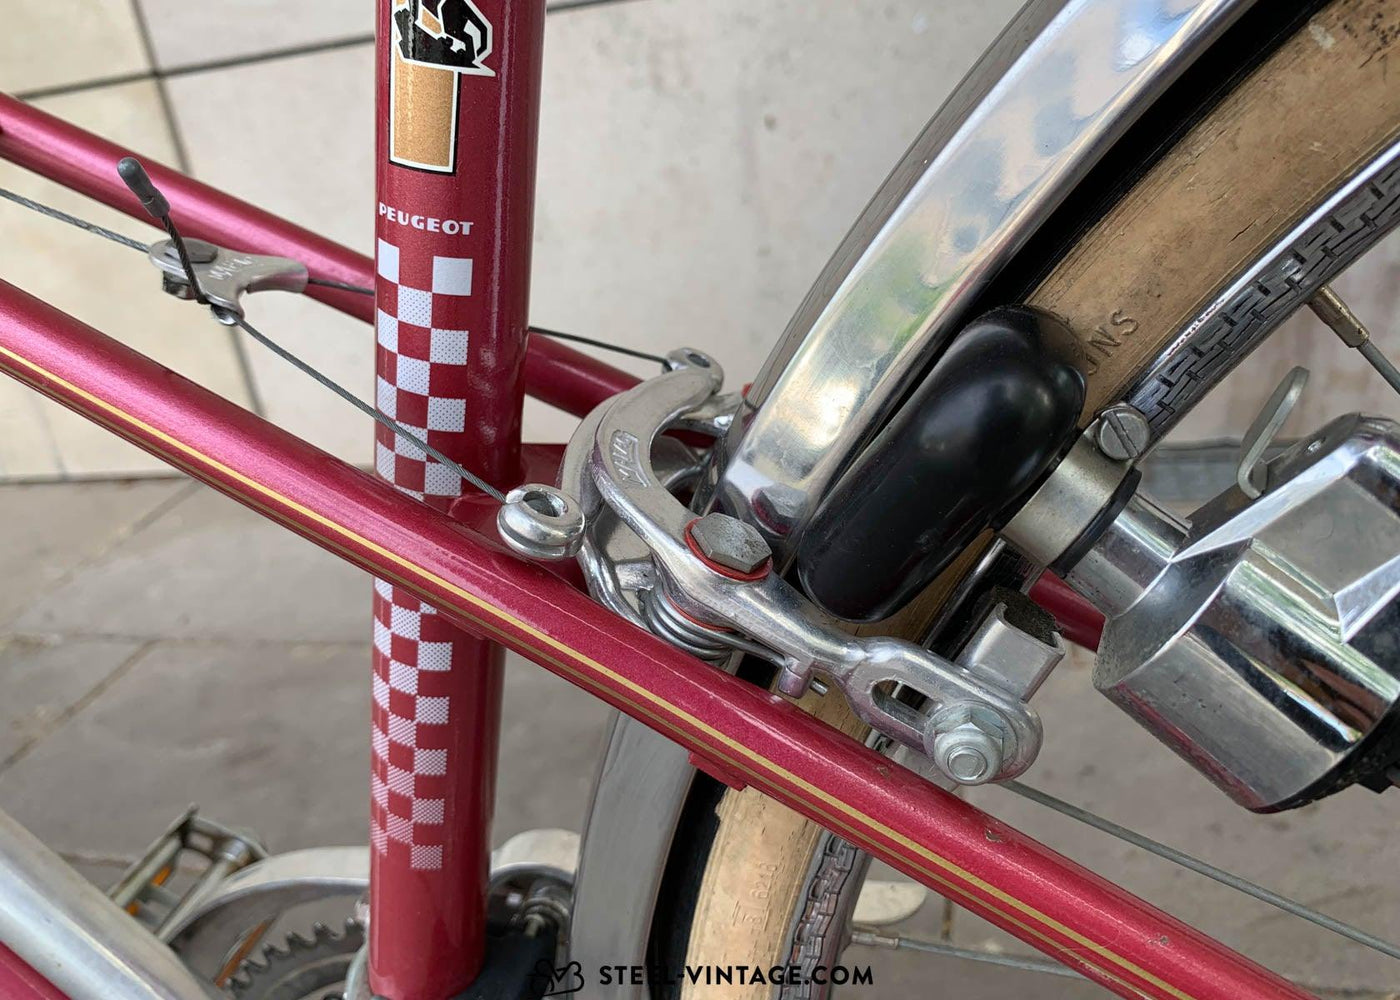 Peugeot Mixte Vintage Road Bicycle - Steel Vintage Bikes